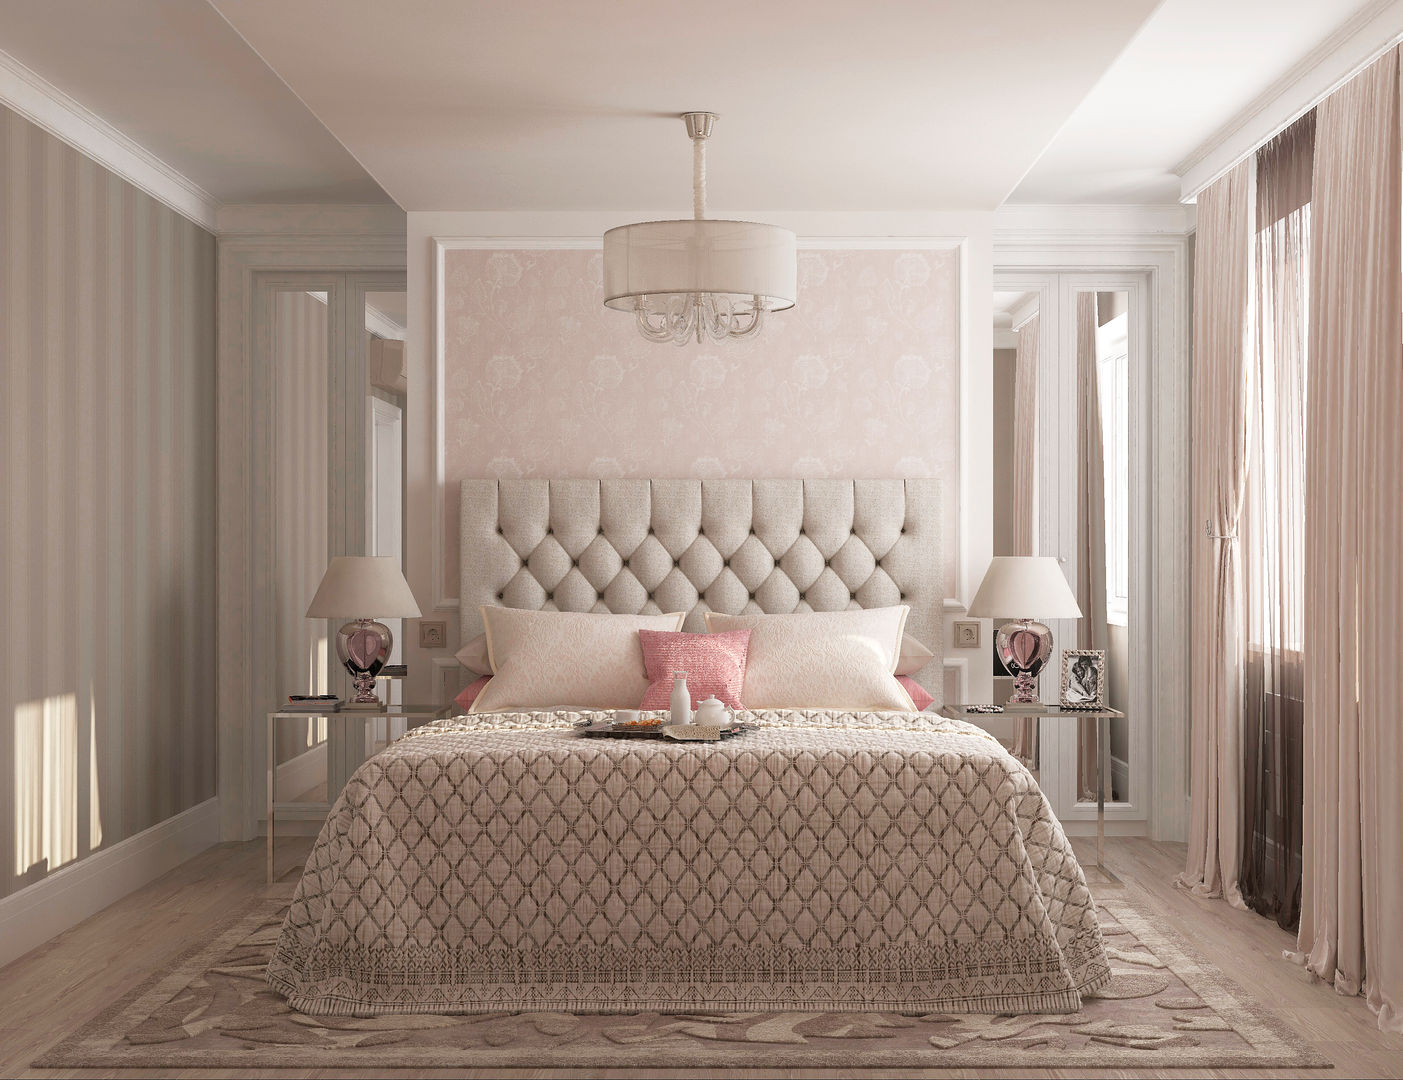 Спальня гостевая "Glamour", Студия дизайна Дарьи Одарюк Студия дизайна Дарьи Одарюк Dormitorios de estilo clásico